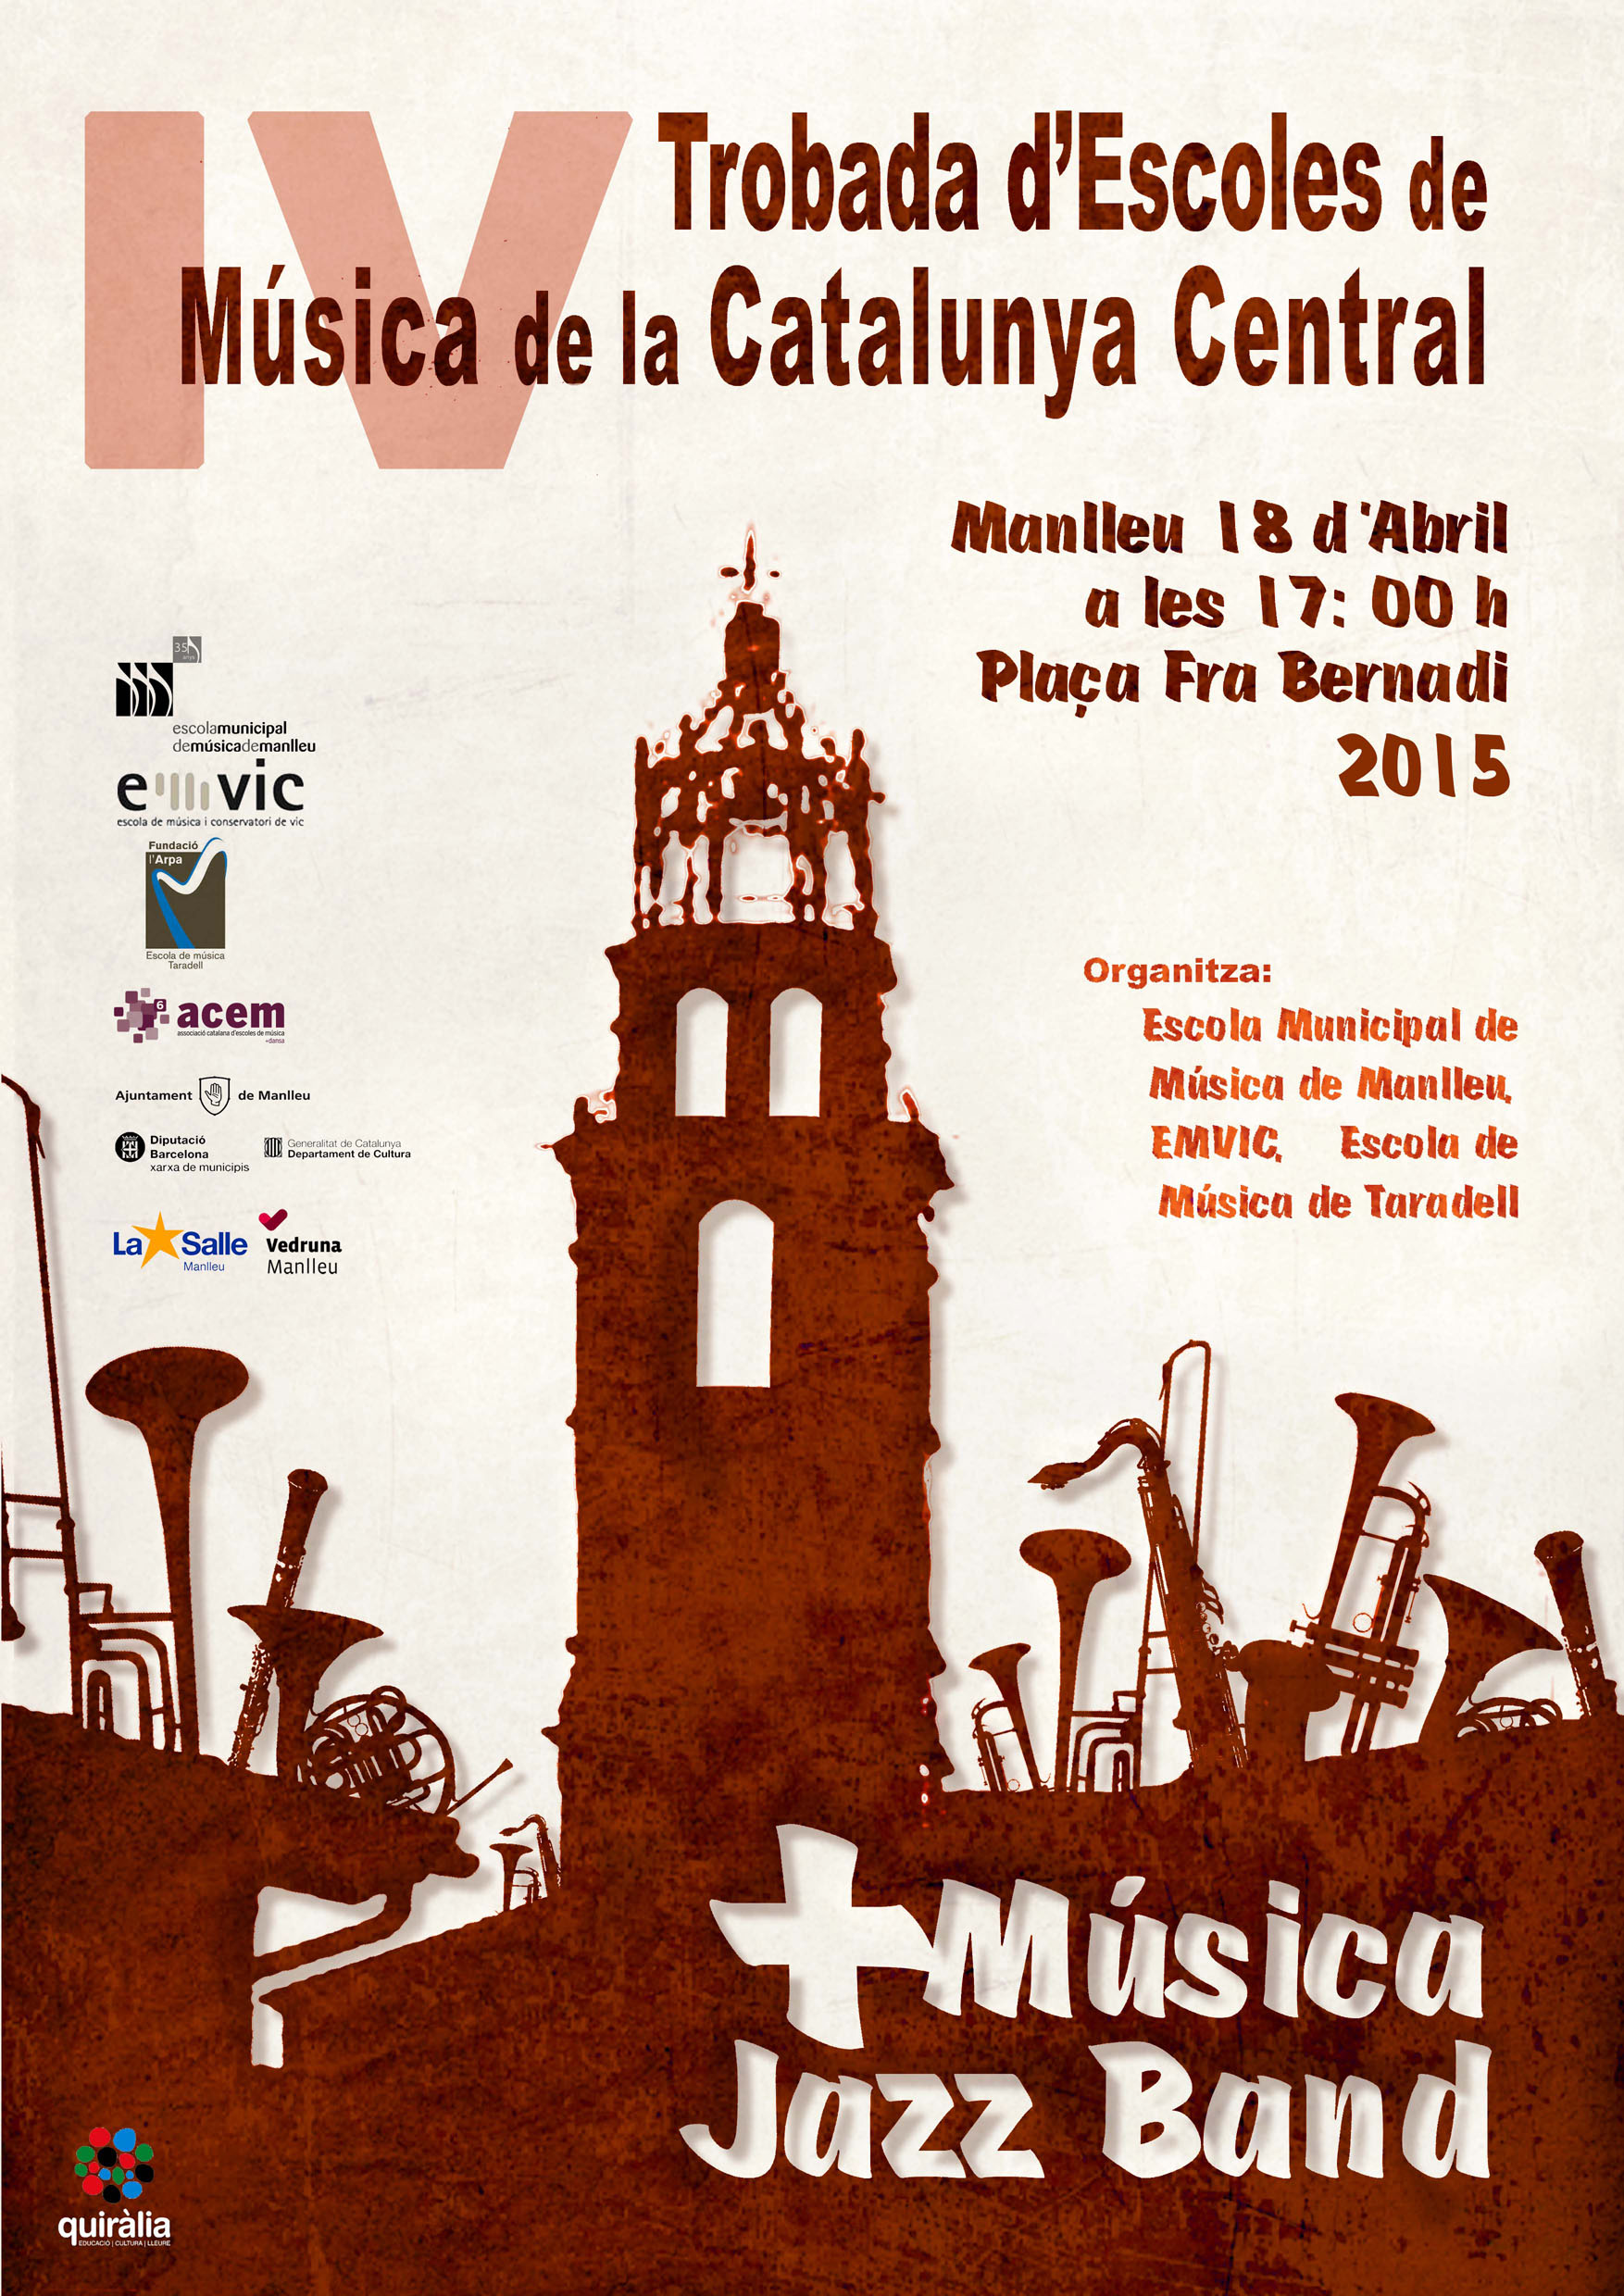 +Música Jazz Band: 4a Trobada d’escoles de música de la Catalunya Central